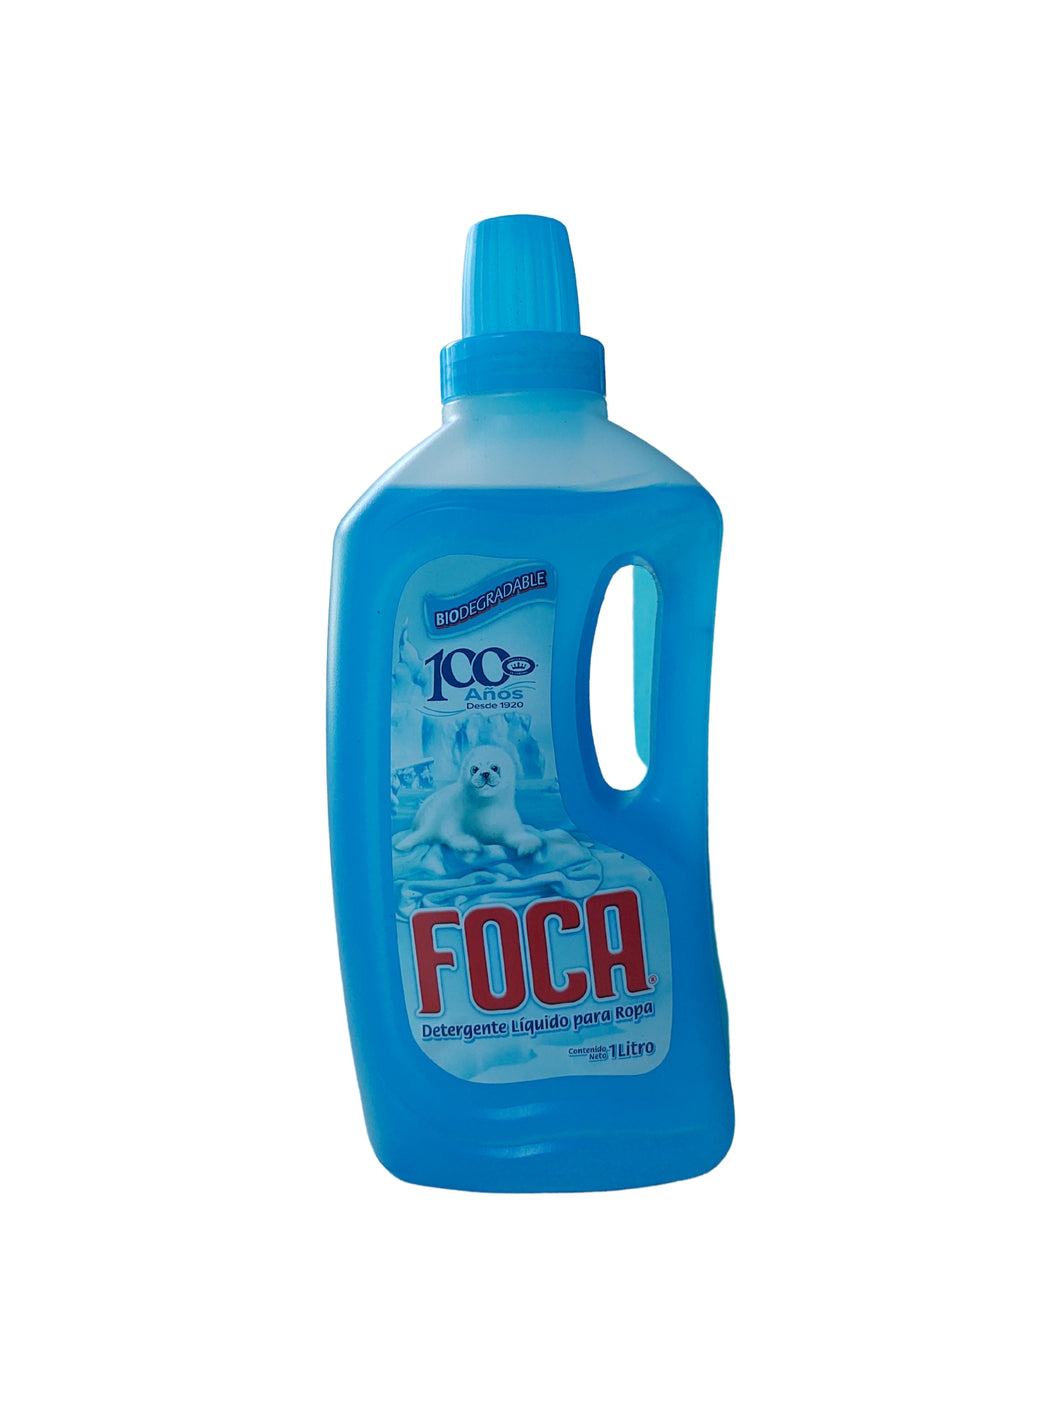 Detergente Liquido Foca 1lt